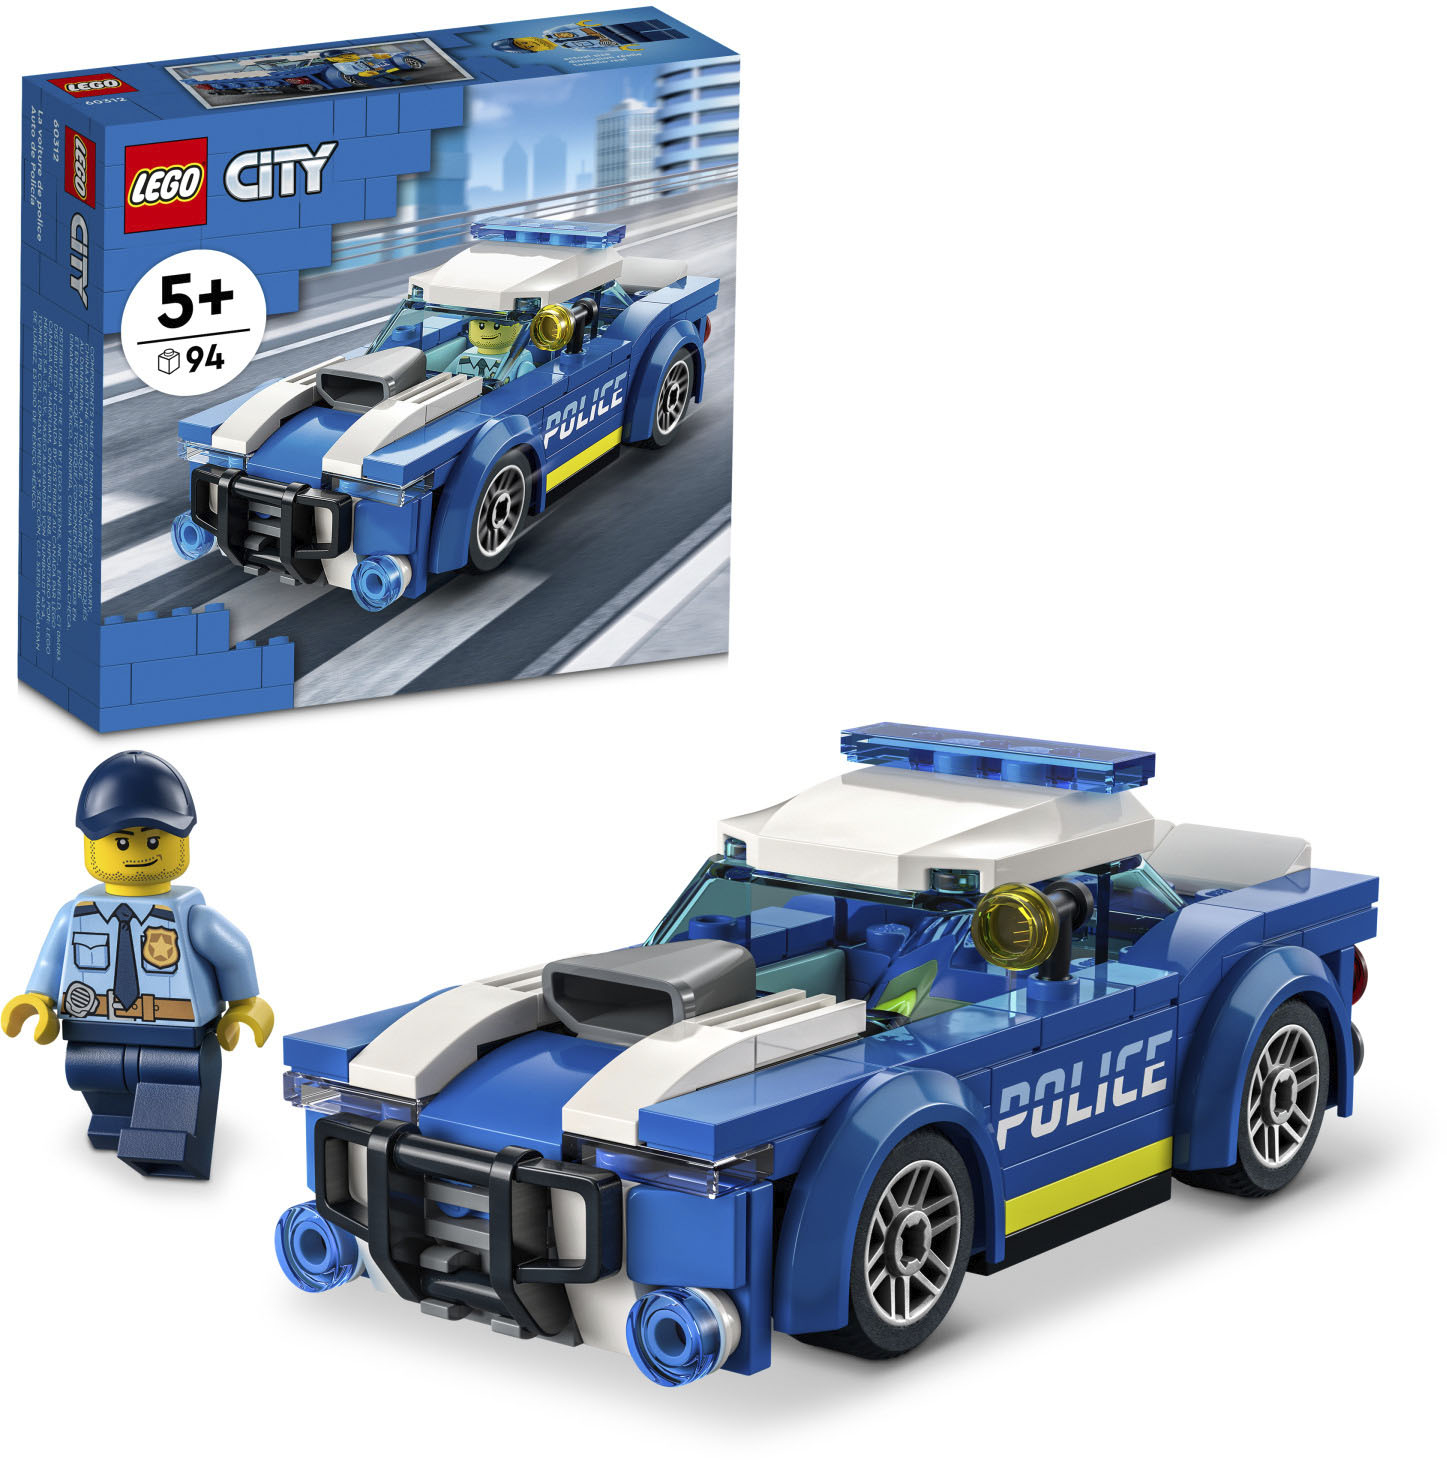 ik ben gelukkig Kiwi Aan het liegen LEGO City Police Car 60312 6379600 - Best Buy